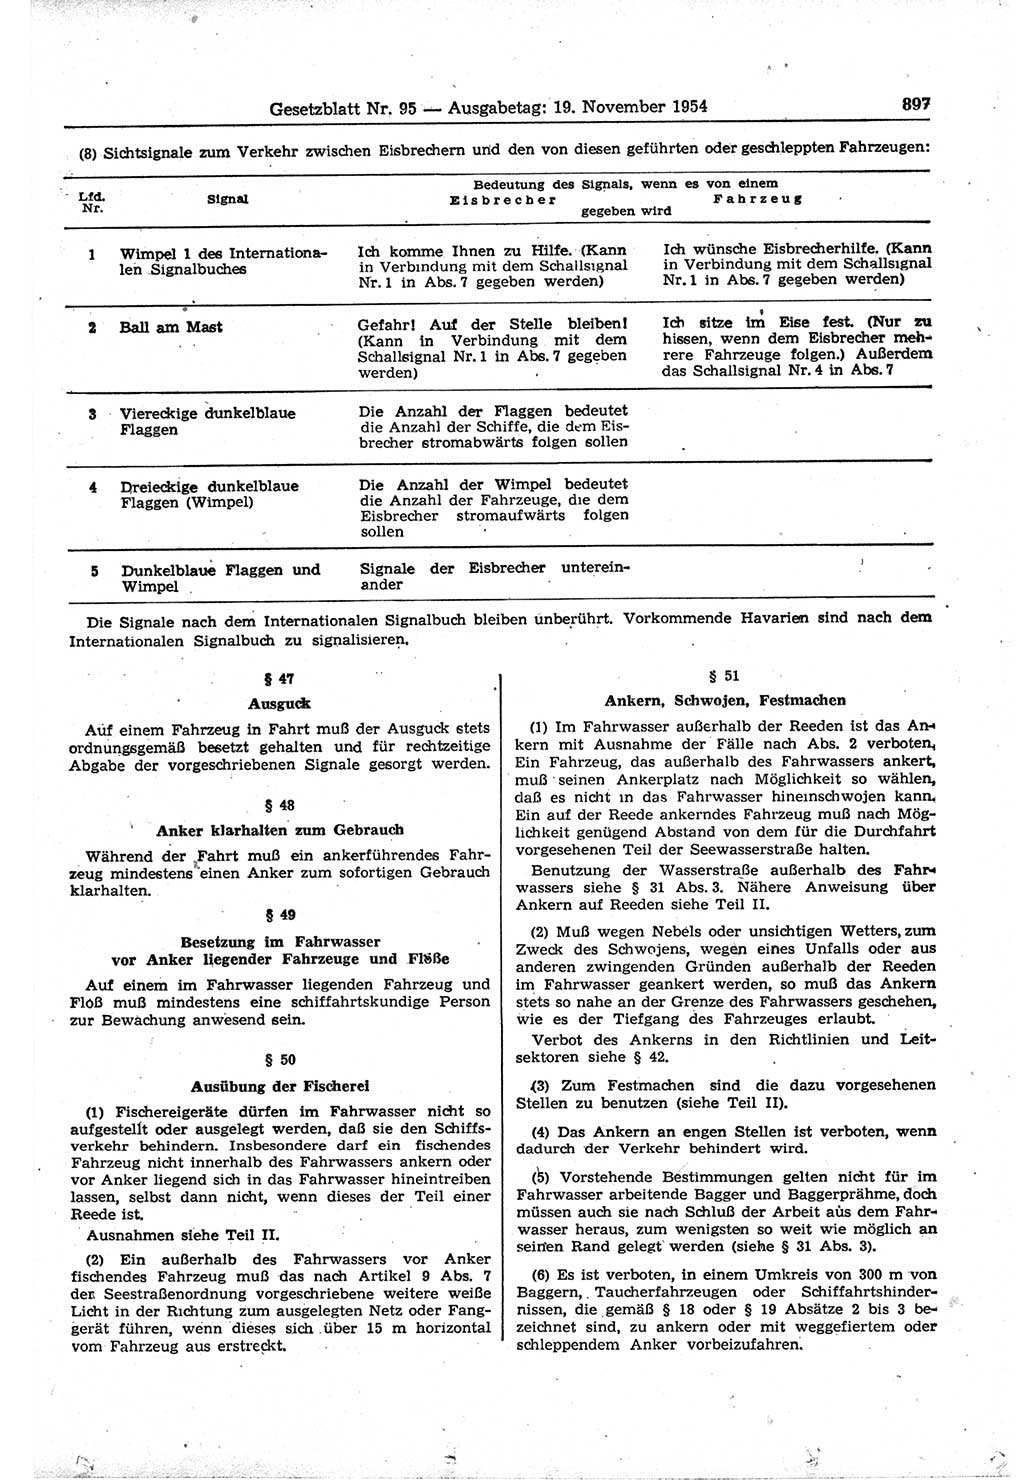 Gesetzblatt (GBl.) der Deutschen Demokratischen Republik (DDR) 1954, Seite 897 (GBl. DDR 1954, S. 897)